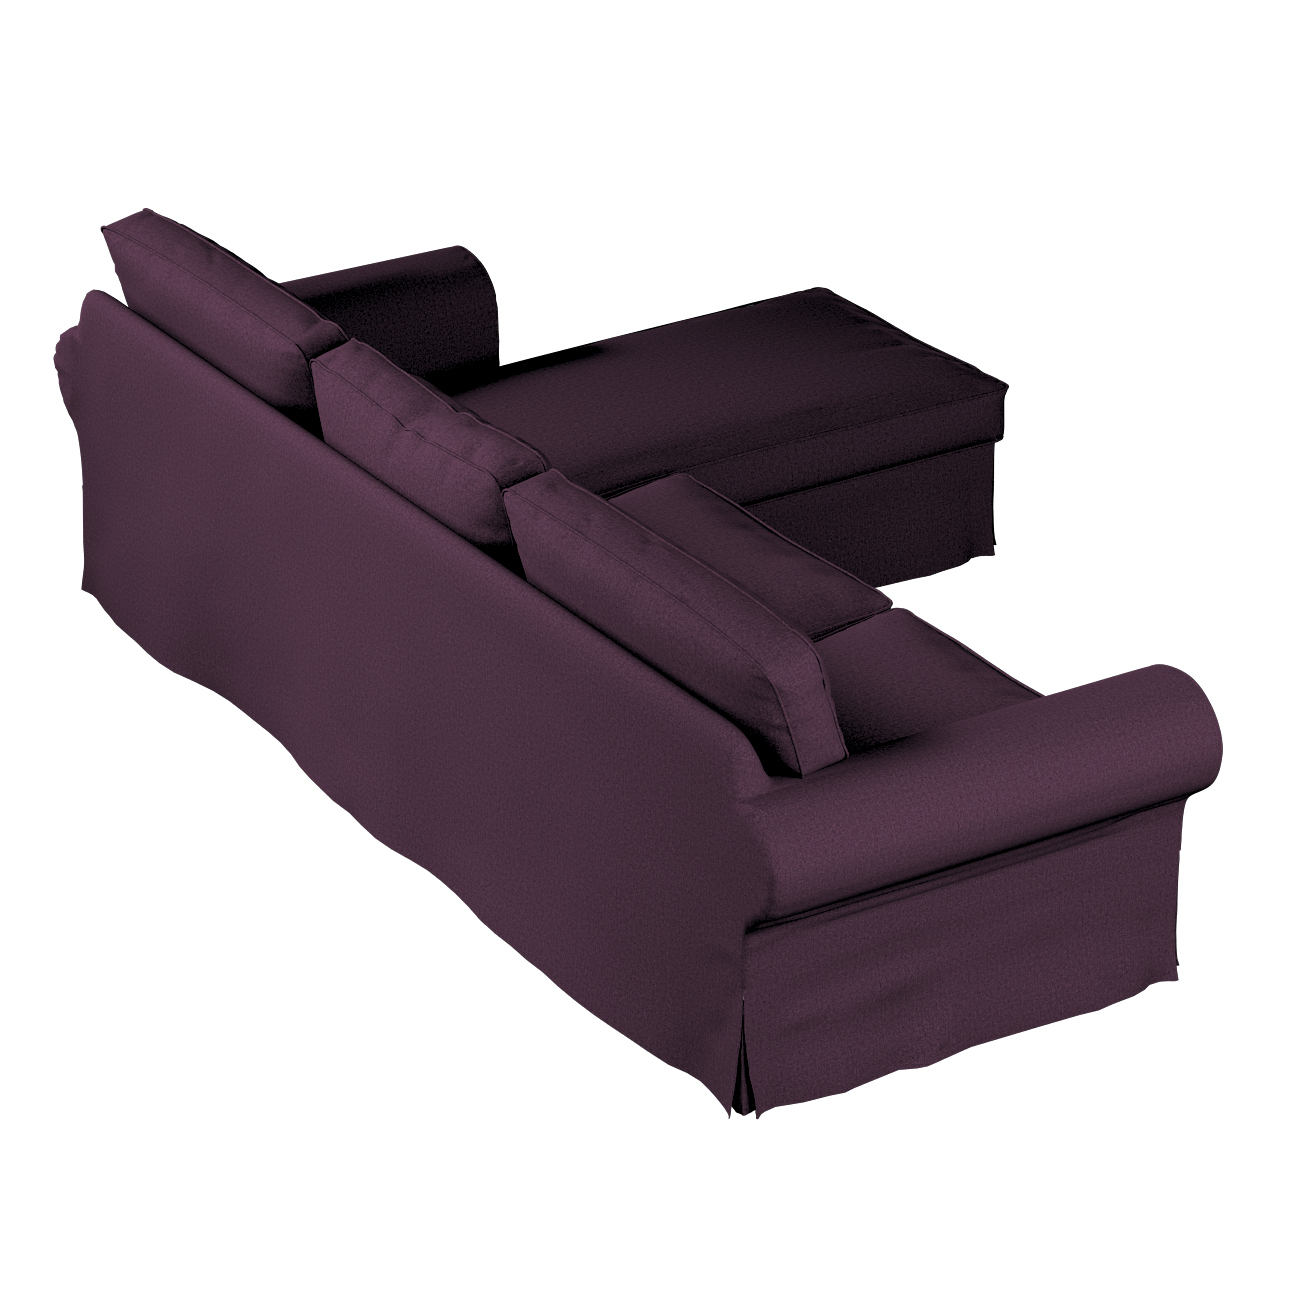 Bezug für Ektorp 2-Sitzer Sofa mit Recamiere, pflaume, Ektorp 2-Sitzer Sofa günstig online kaufen